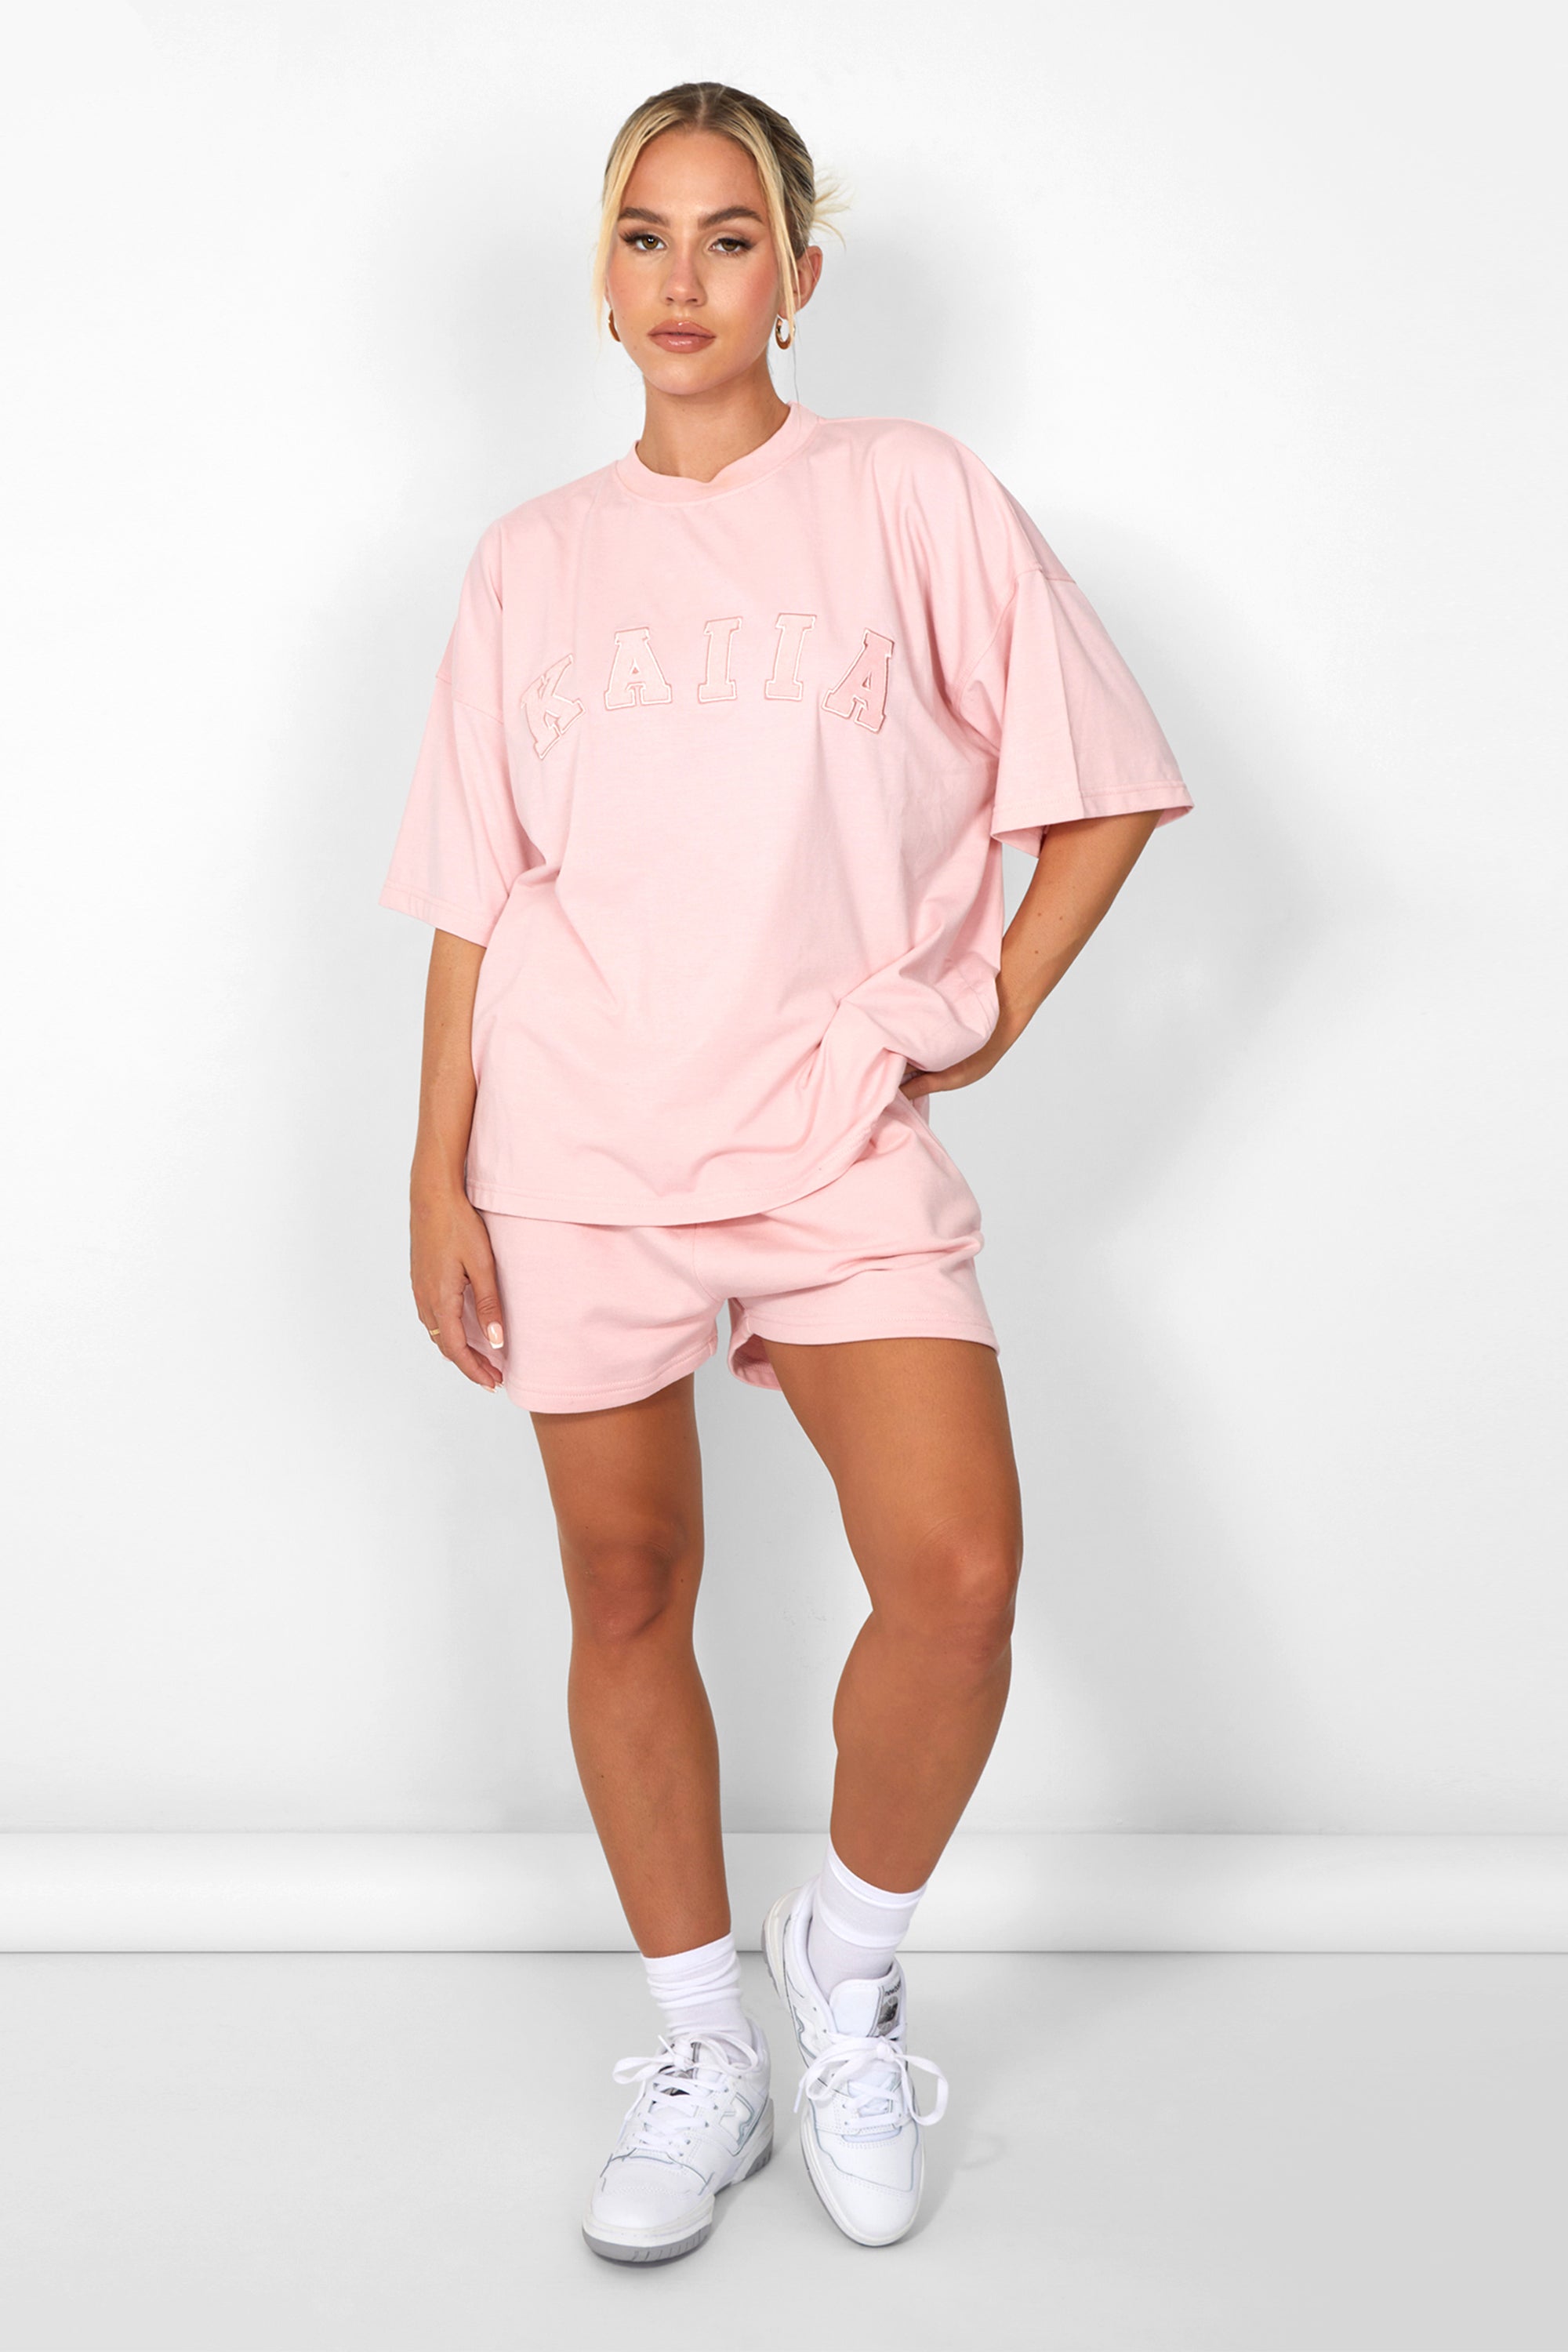 Kaiia Oversized T-shirt Soft Pink UK 20